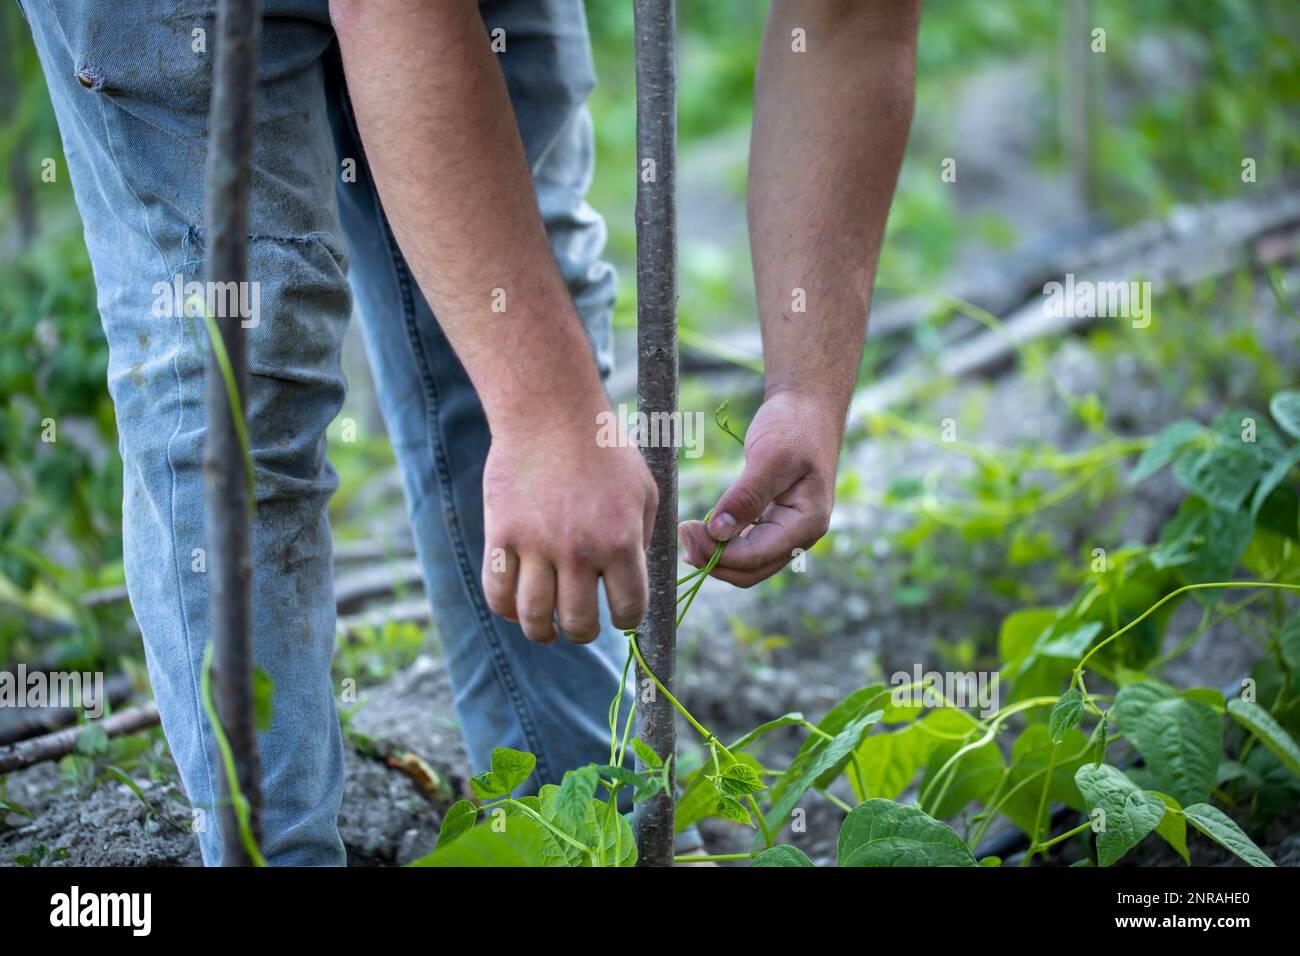 fermier cultivant des haricots verts sur son jardin d'origine Banque D'Images